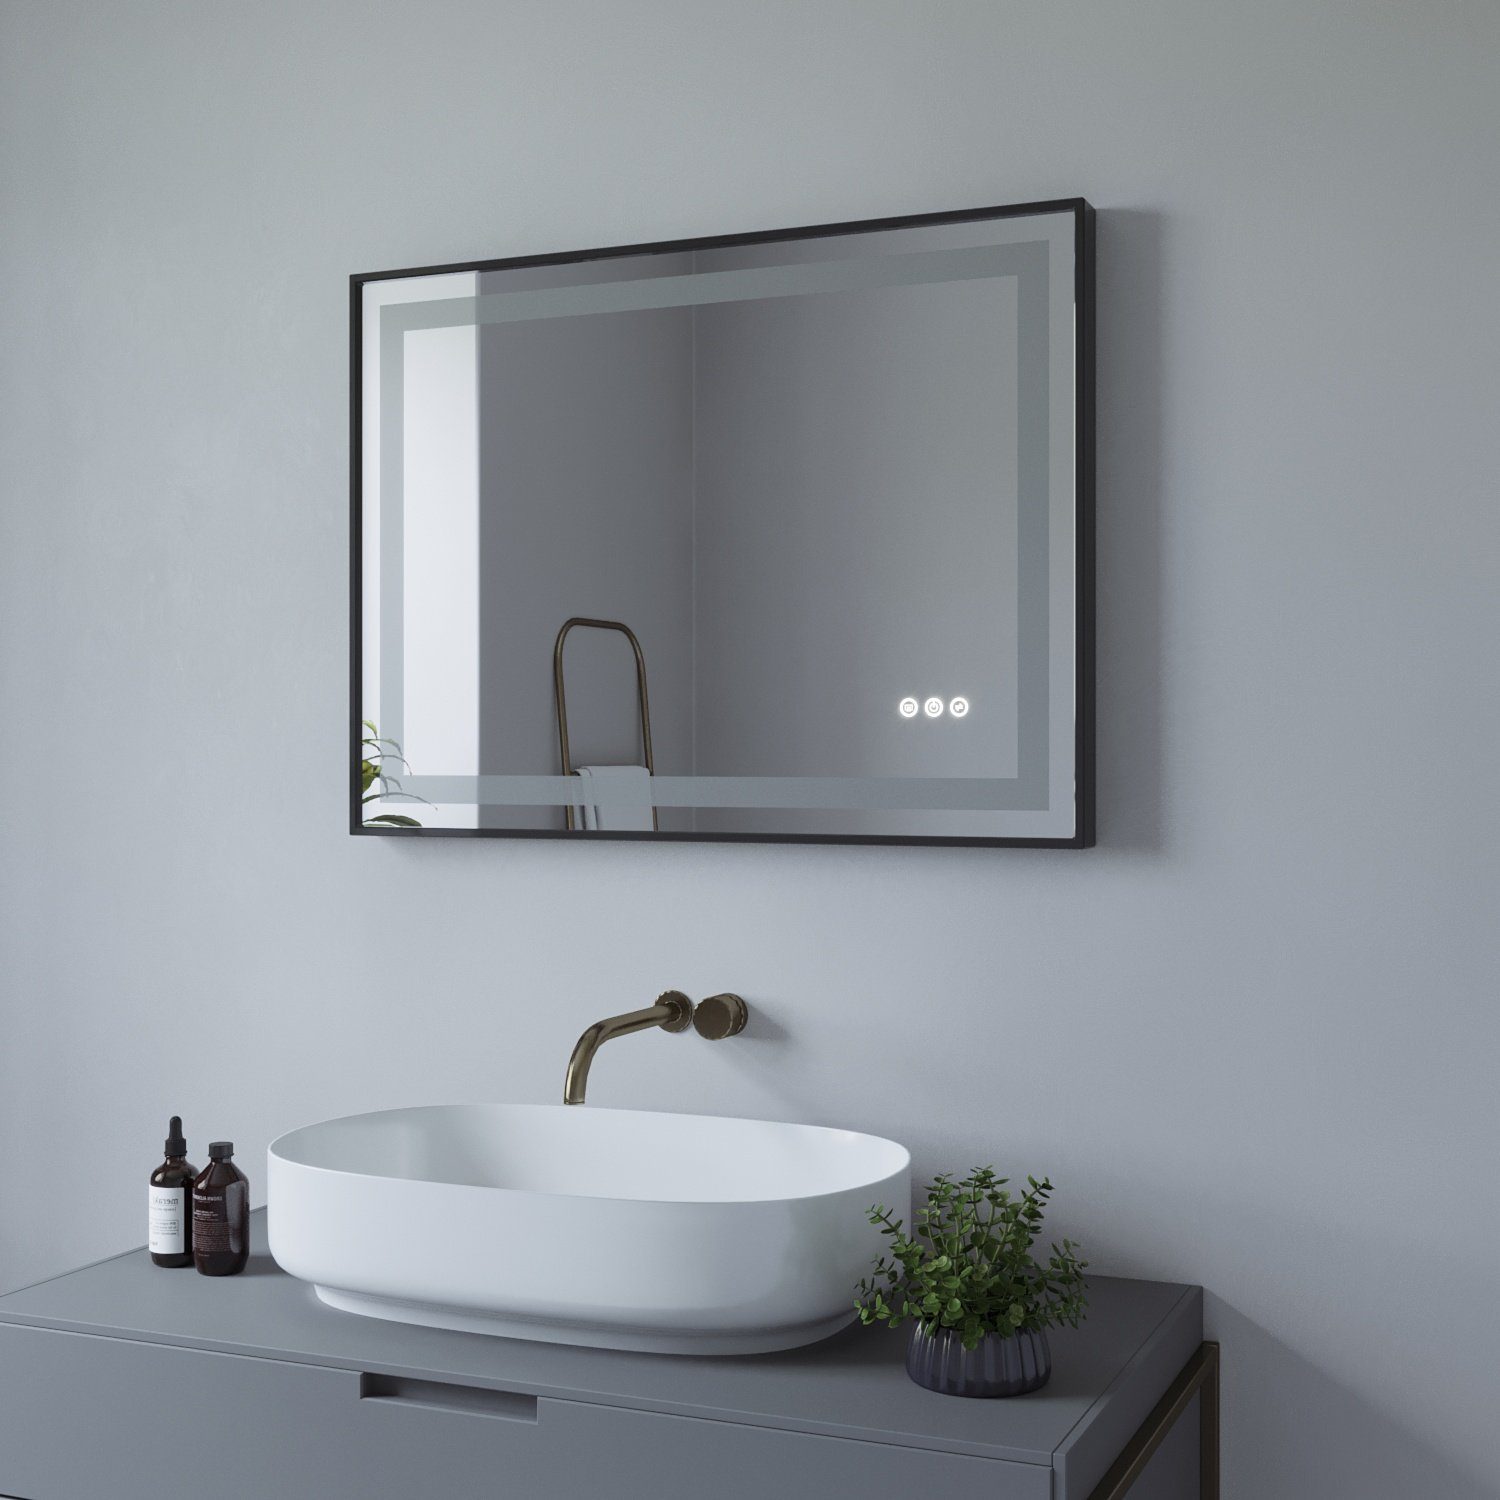 AQUALAVOS Badspiegel Badspiegel mit Beleuchtung, Energiesparender 6400K Warmweiß Schwarzer Antibeschlage LED Licht Rahmen 3000K Kaltweiß/ Licht Lichtspiegel, mit